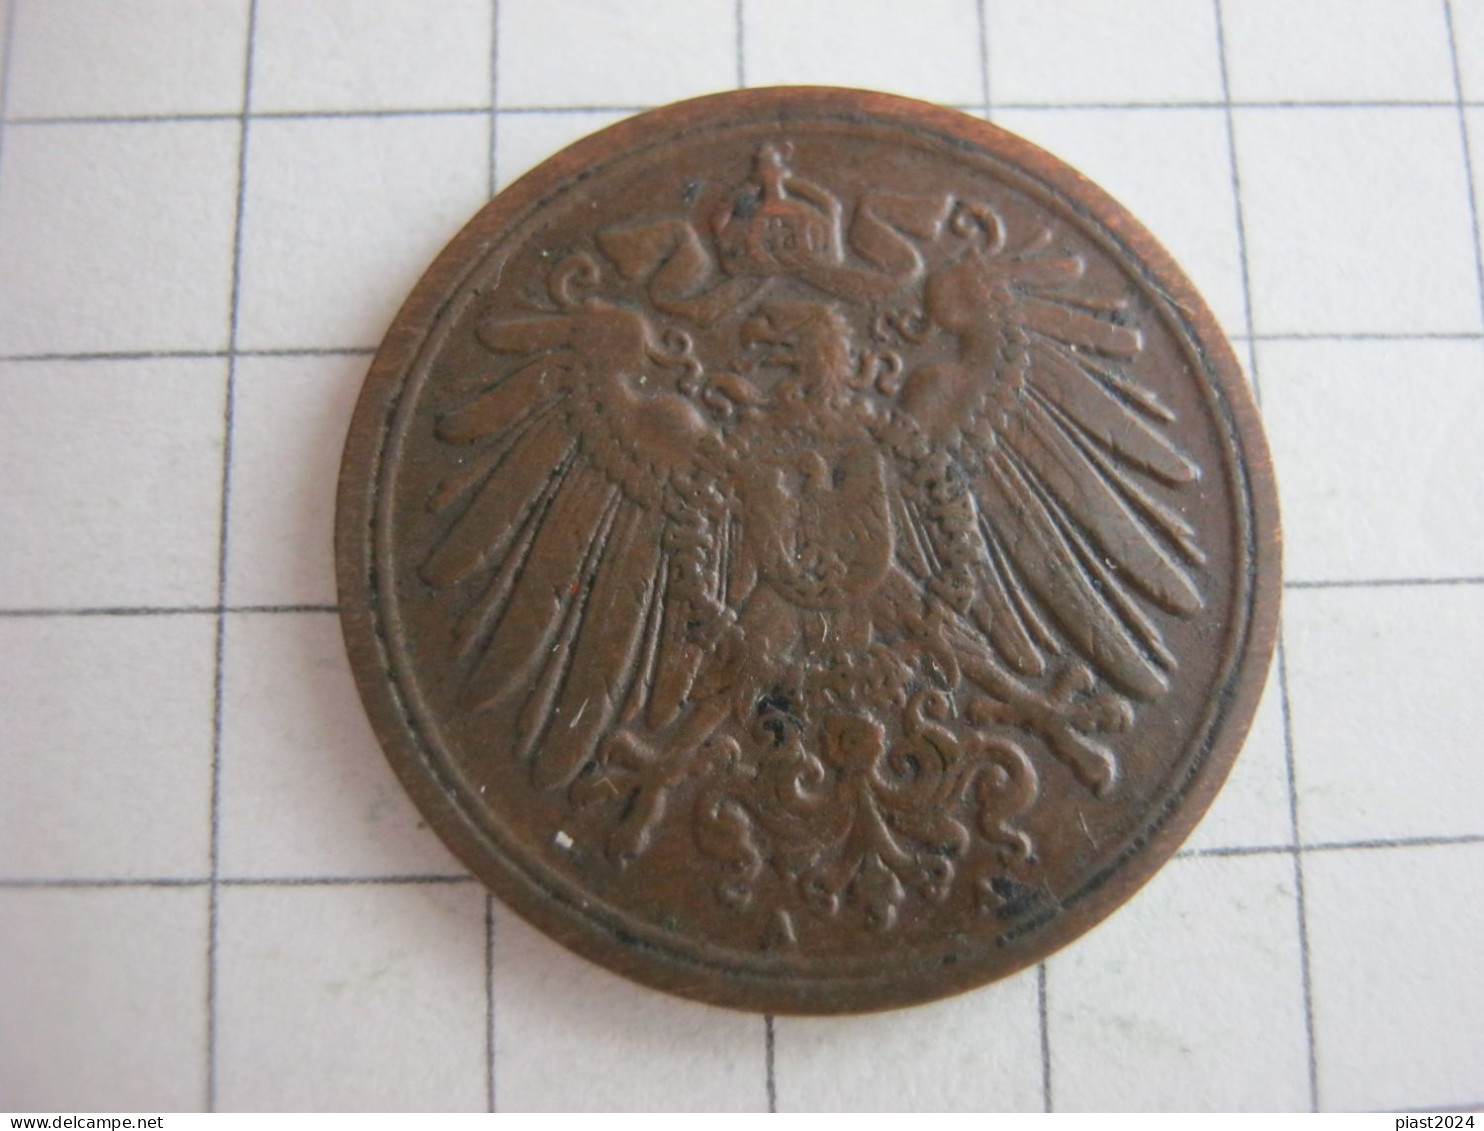 Germany 1 Pfennig 1906 A - 1 Pfennig